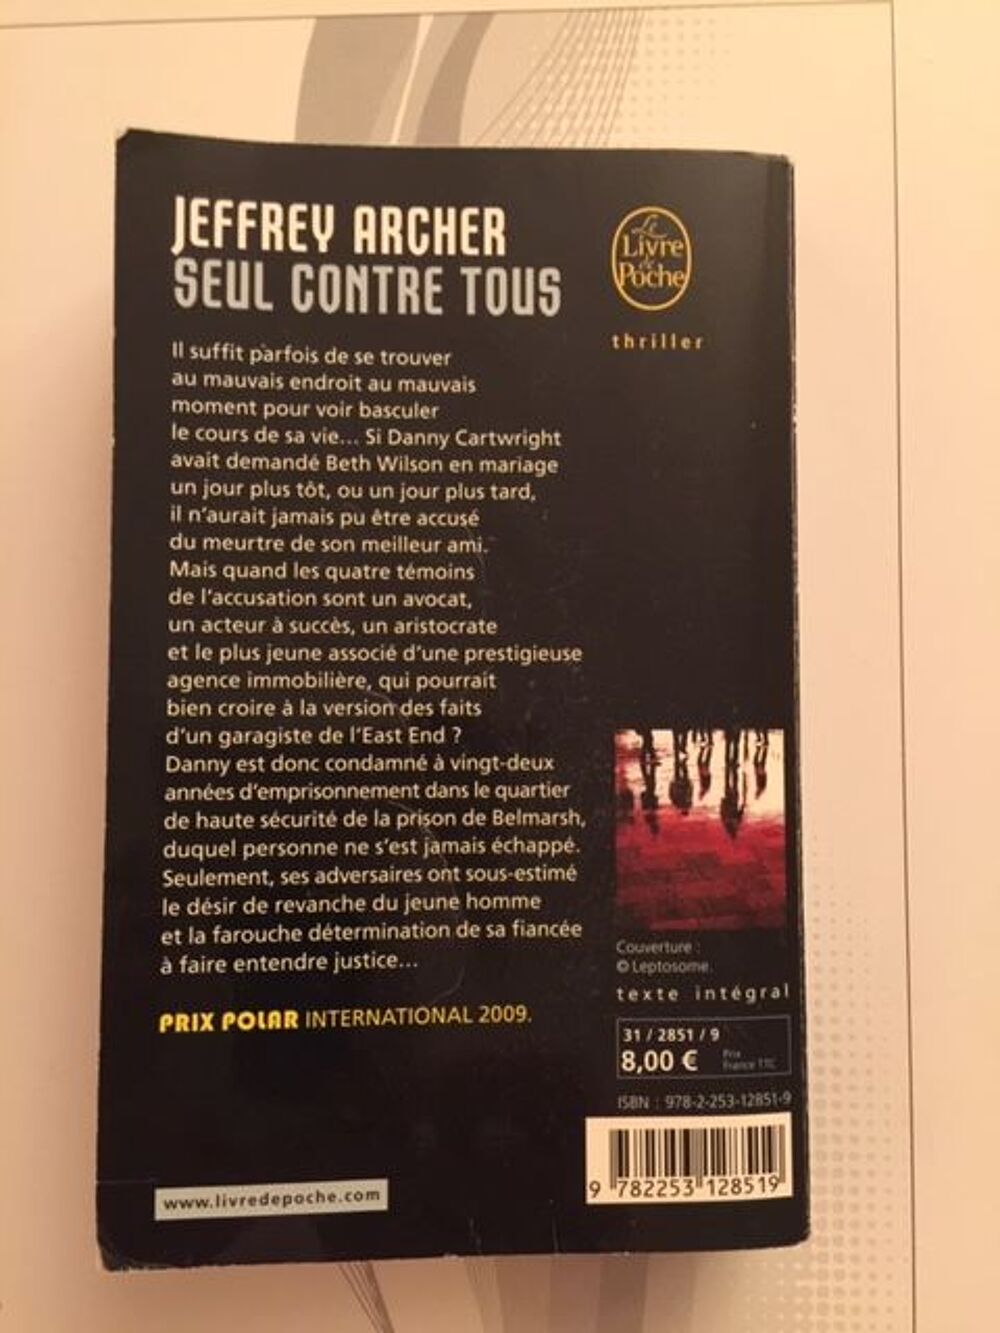 Seul contre tous de Jeffrey ARCHER (Livre poche Thriller) Livres et BD